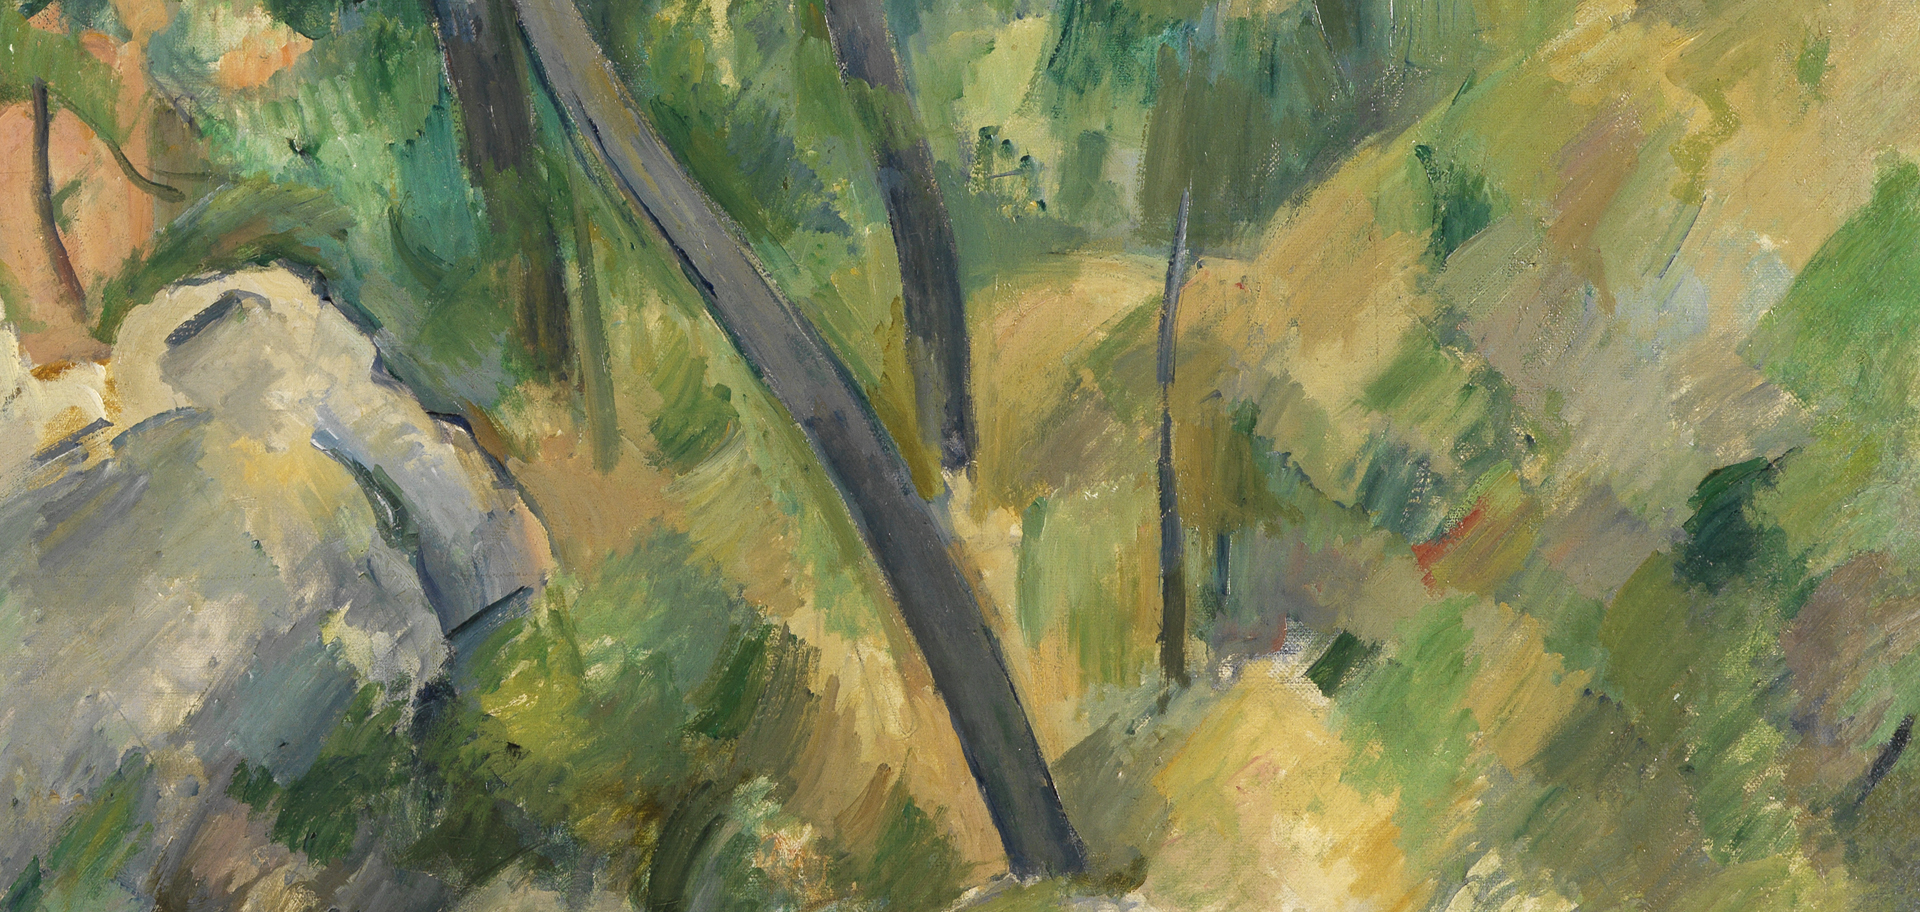 Detail des Gemäldes Blick auf das Meer bei L’Estaque von Paul Cézanne. Nahansicht Pinselstriche, Felsen, dünne Baumstämme, dazwischen bewachsenes Gelände.